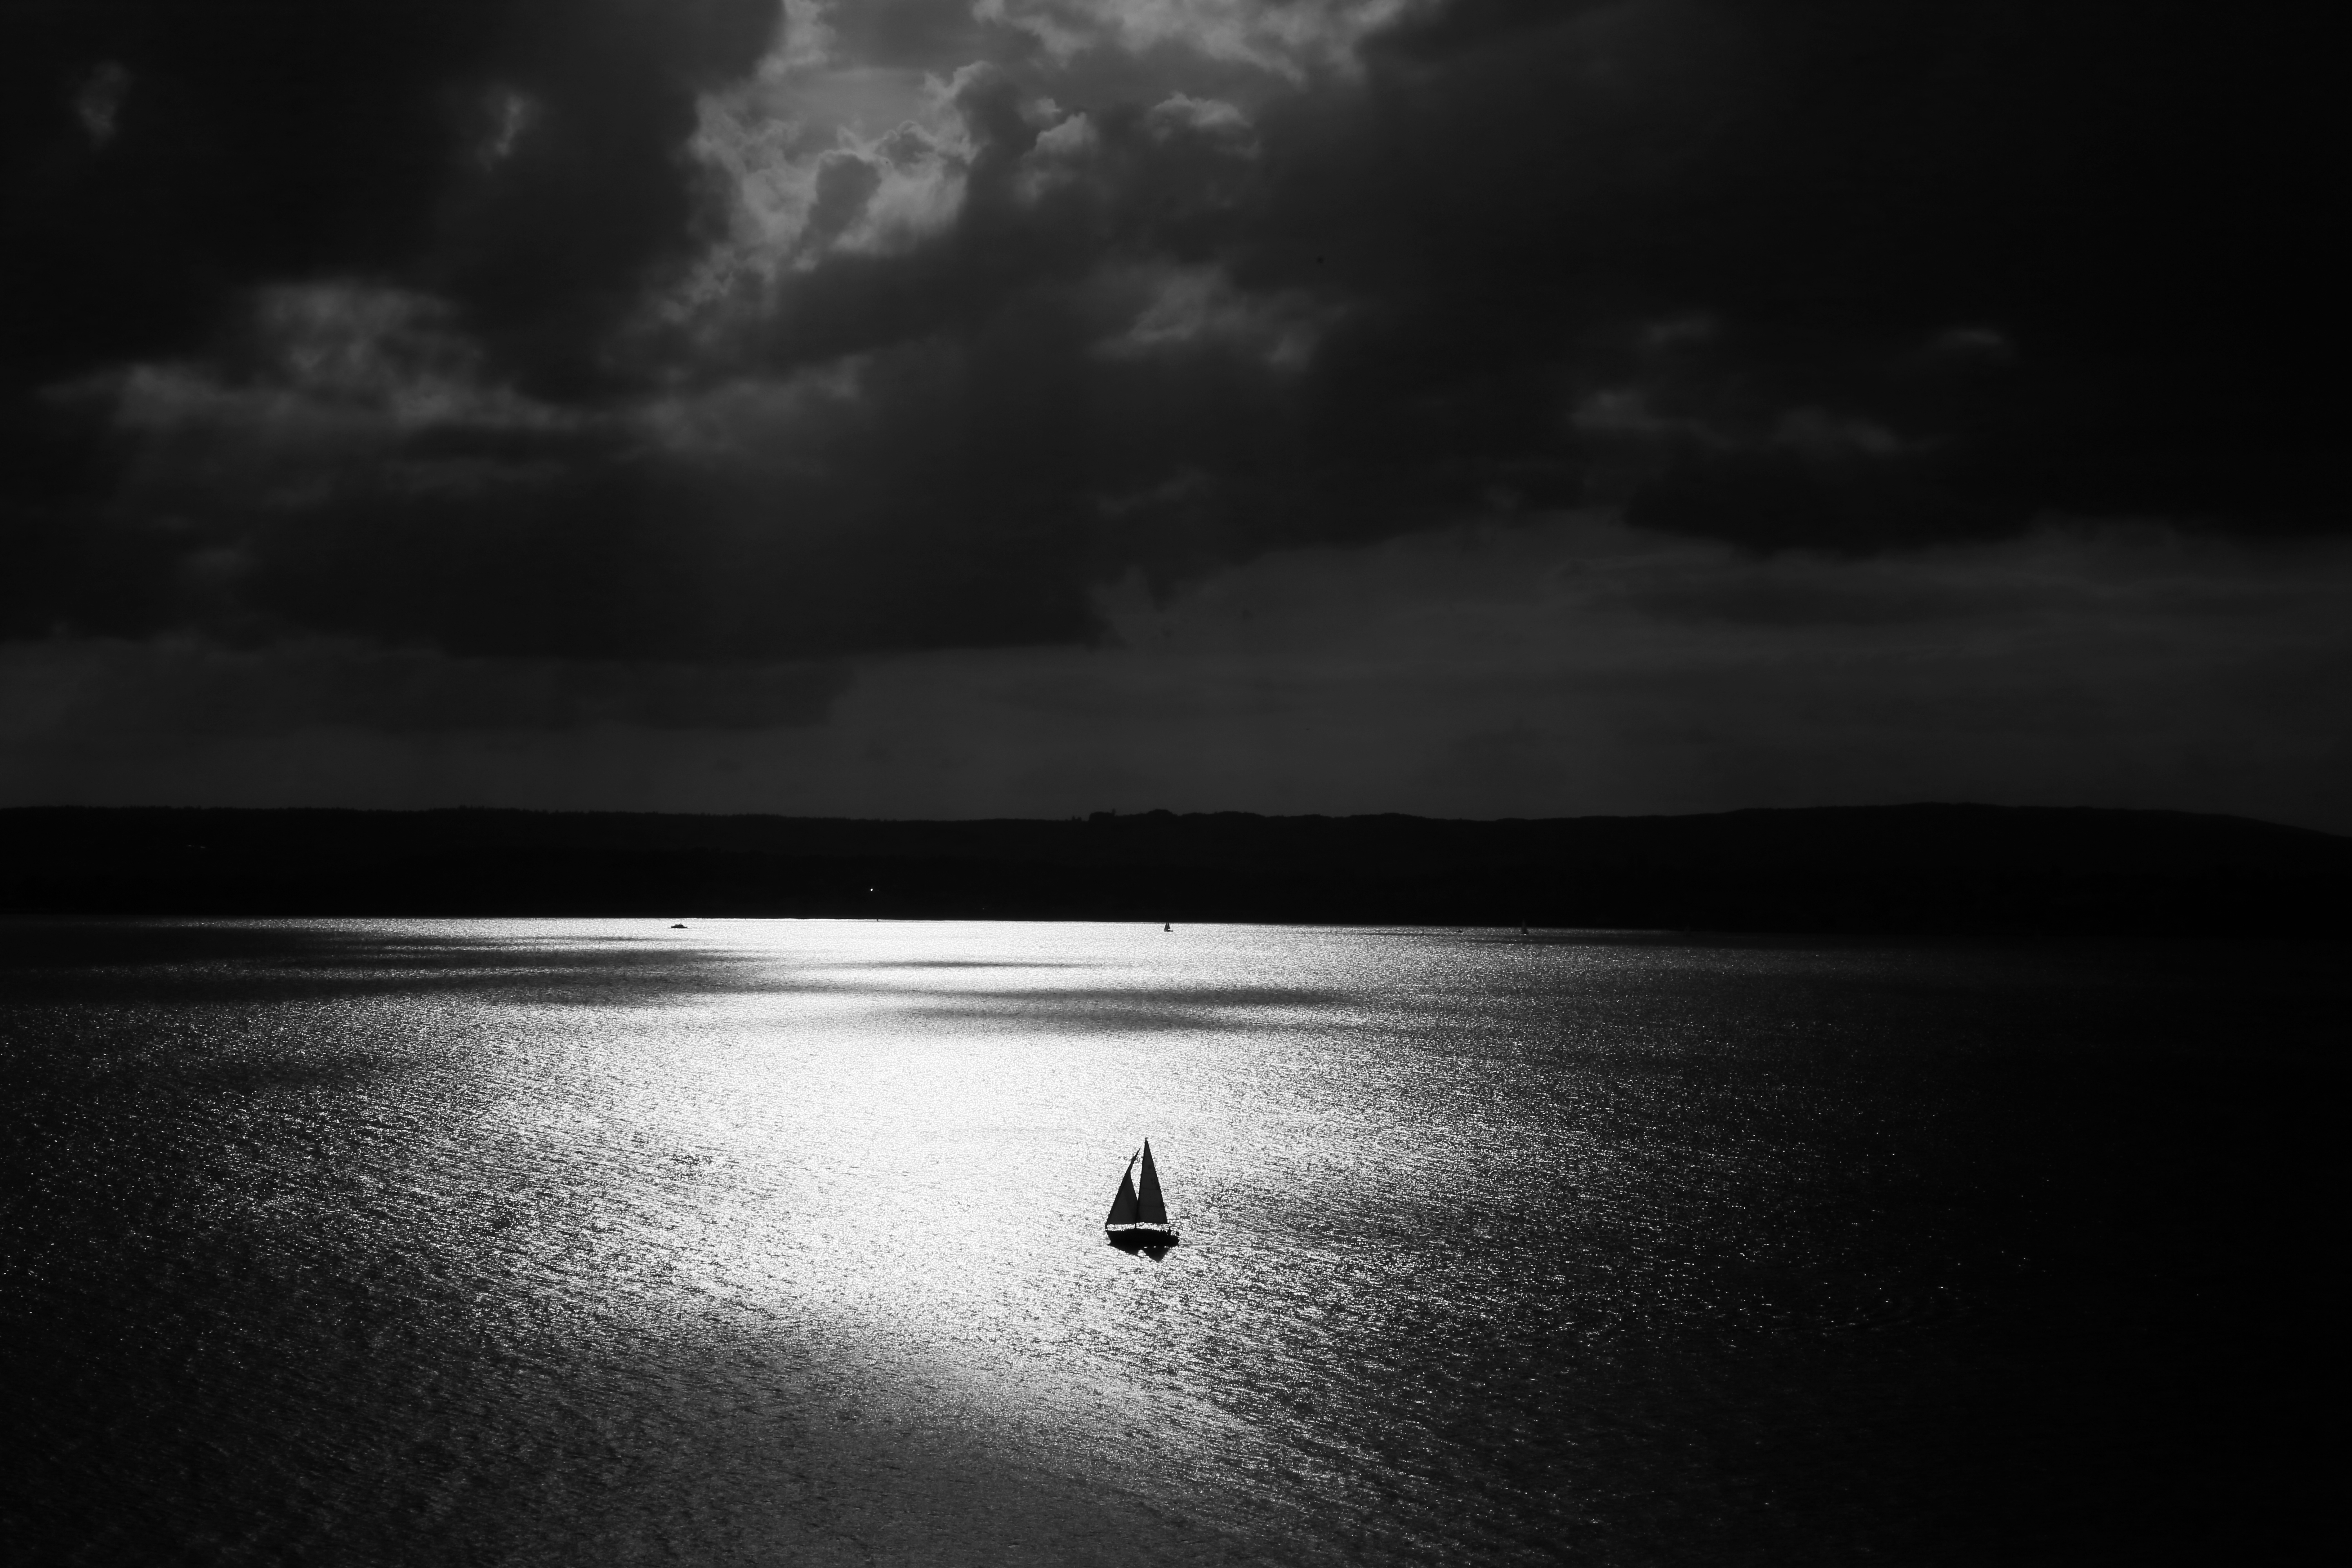 chb, night, minimalism, bw, sail, alone, lonely